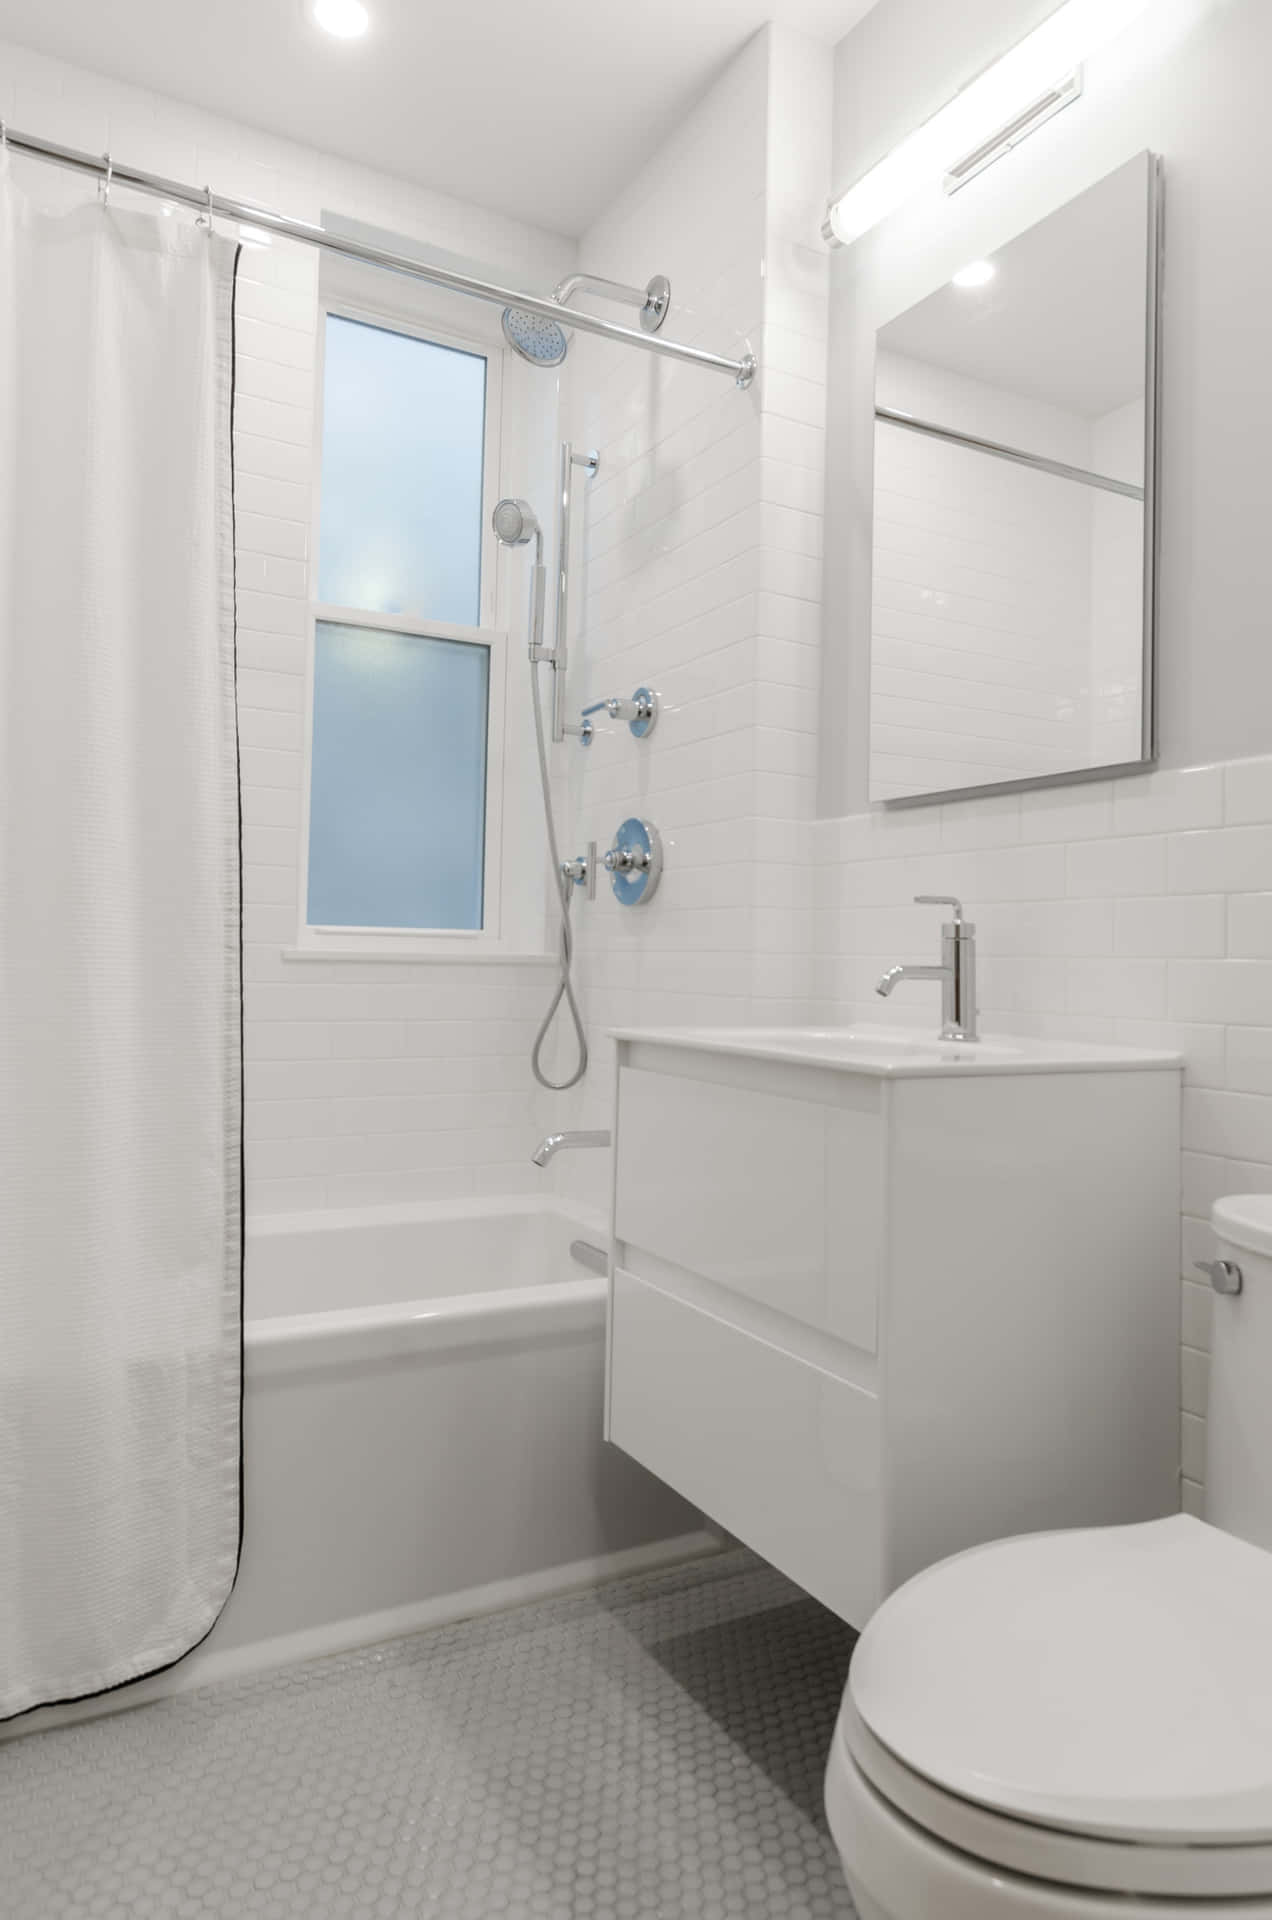 Unadorned All-White Bathroom Picture